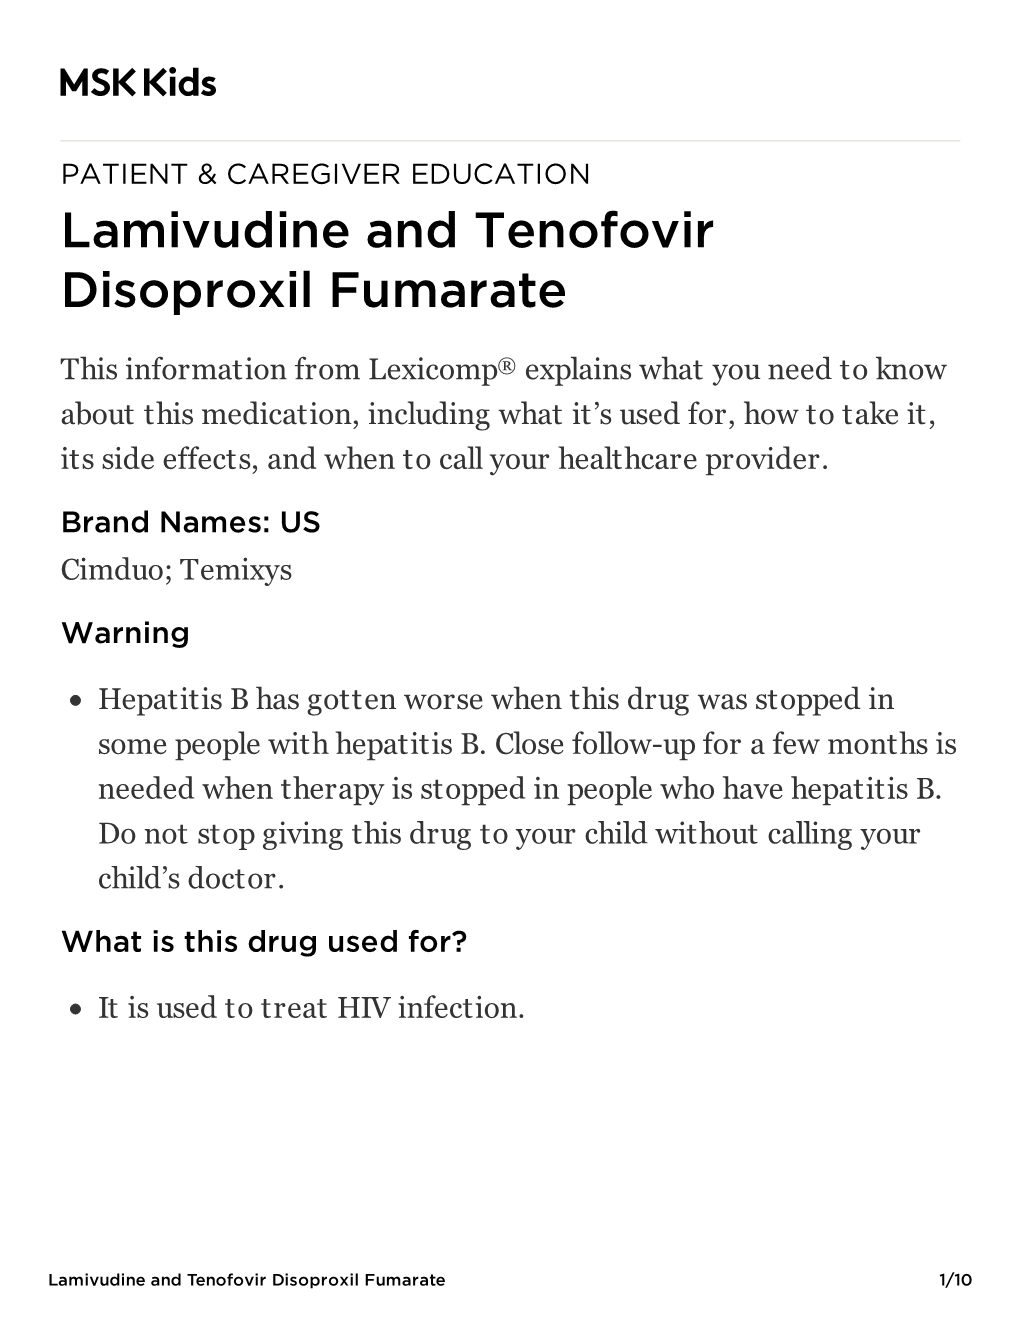 Lamivudine and Tenofovir Disoproxil Fumarate